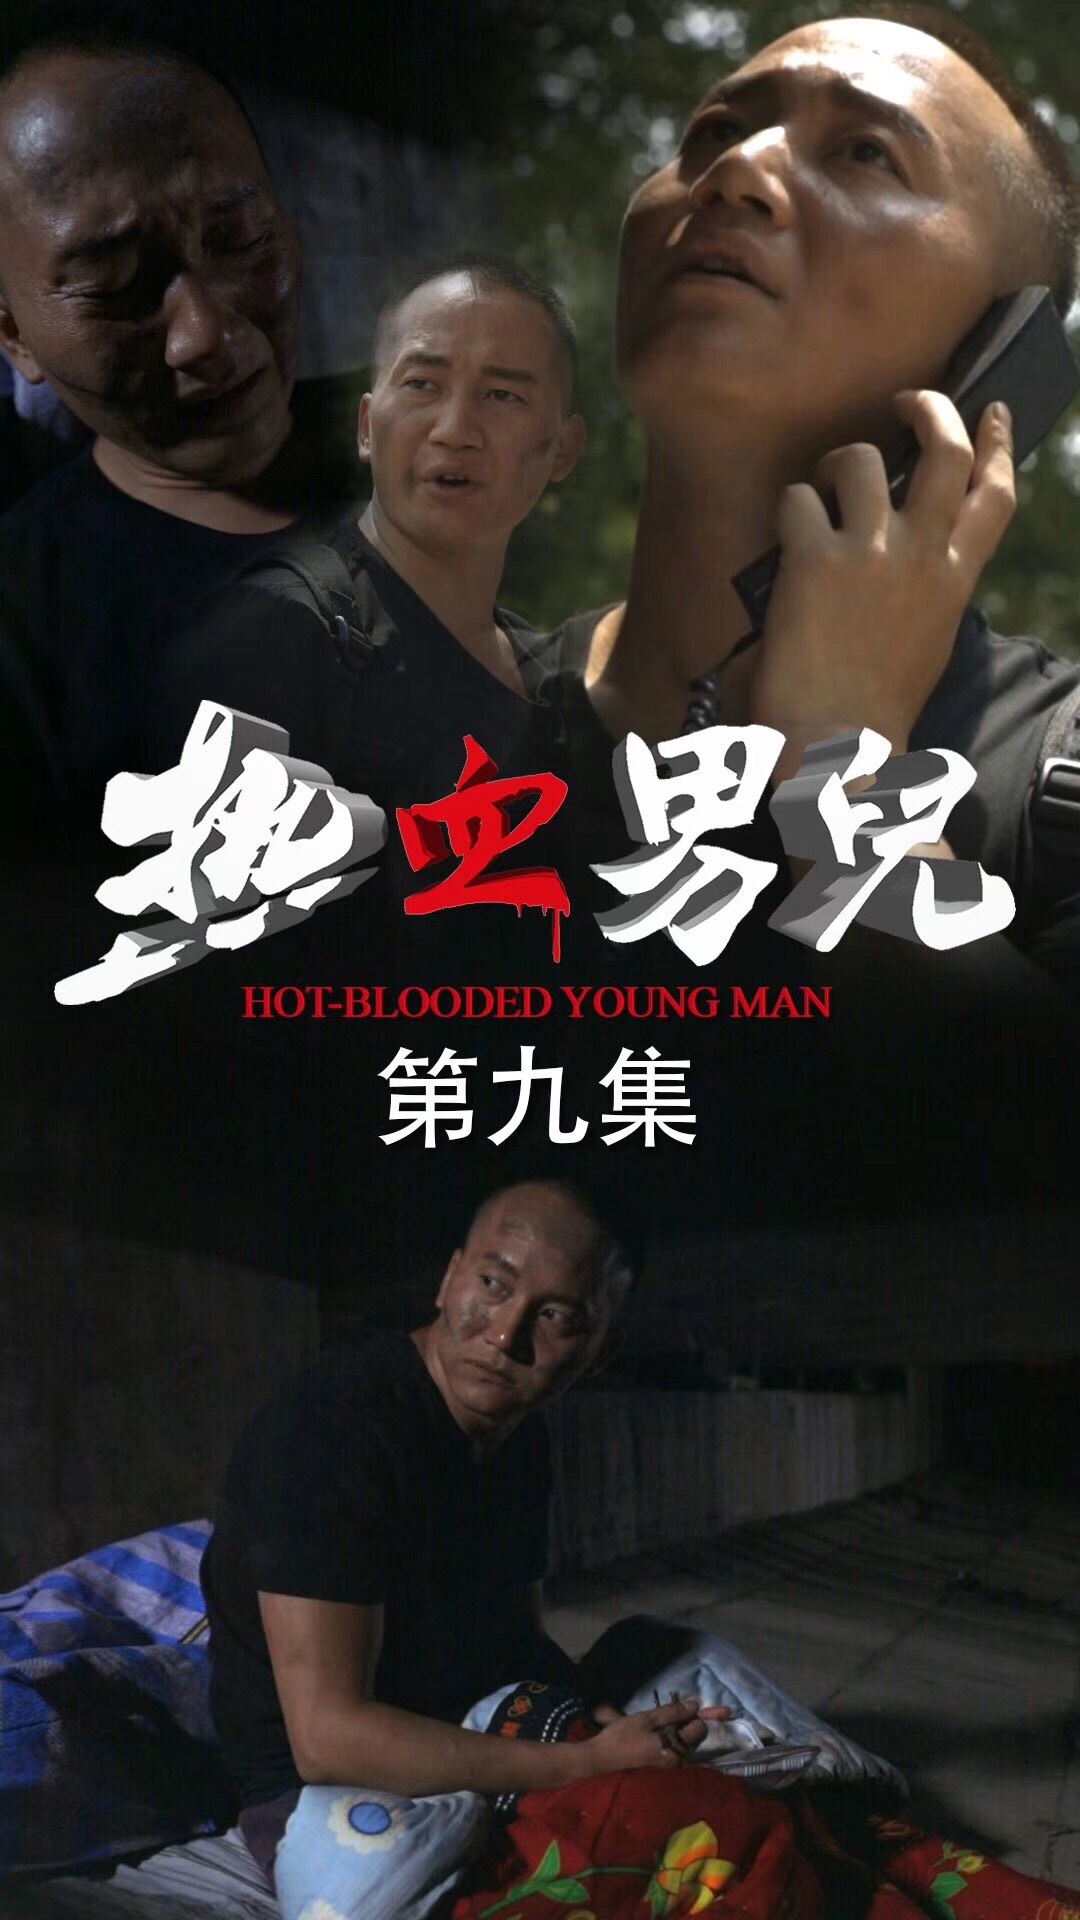 由华视搜星释行啸导演执导的首部竖屏电影《热血男儿》，正在快手热播。